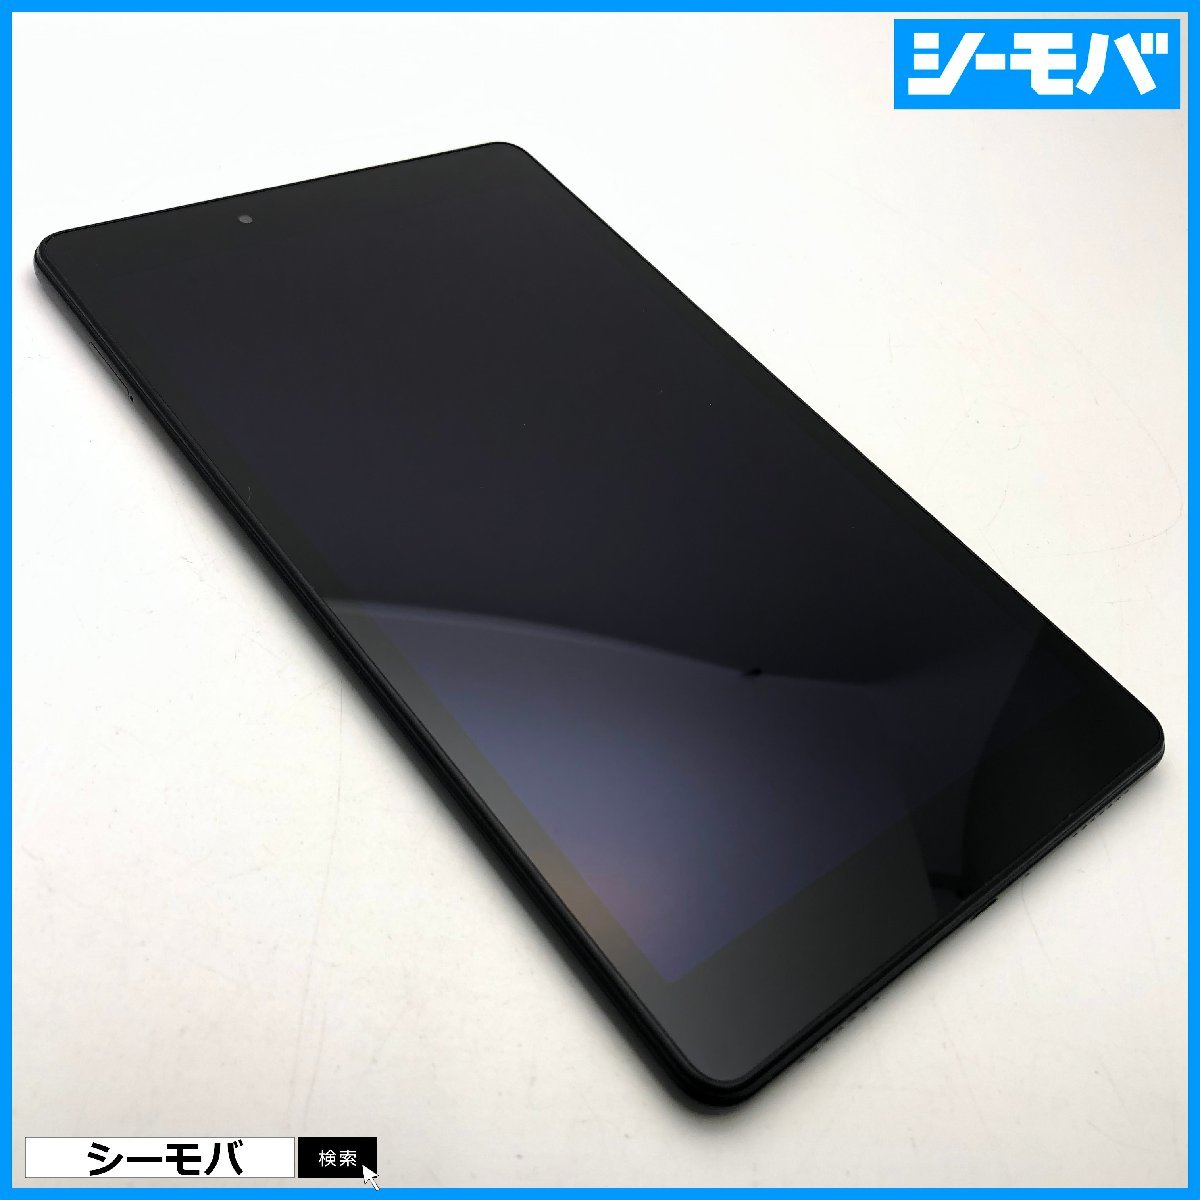 タブレット サムスン Galaxy Tab A 8.0 SM-T290 Wi-Fi 32GB ブラック  8インチ android アンドロイド RUUN13022のサムネイル